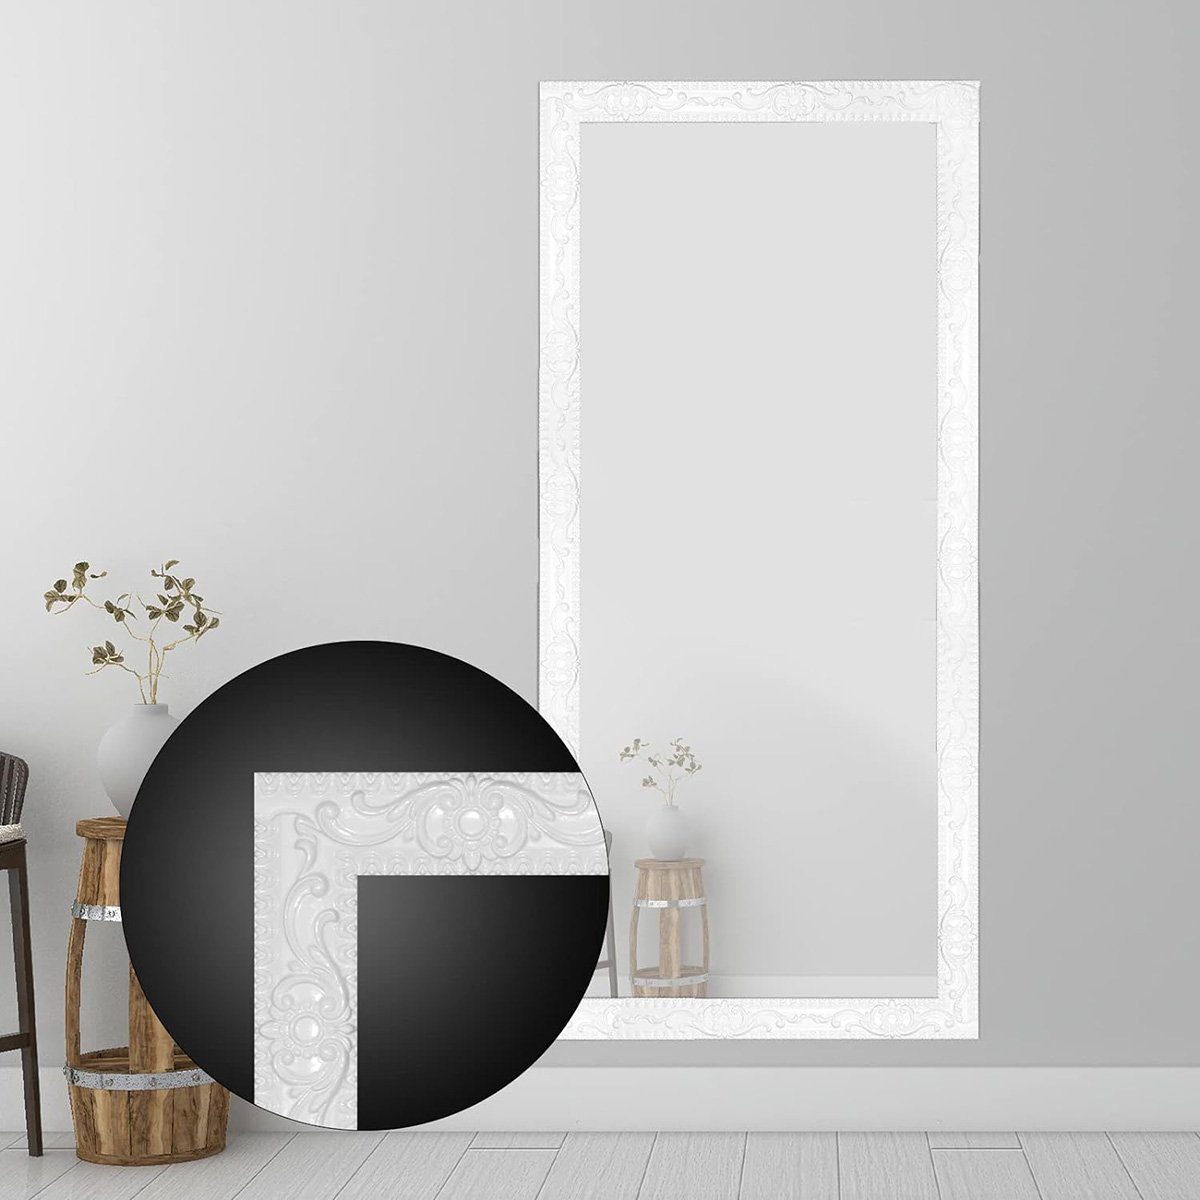 & Abziehen, – ft. Silber 16,4 aufkleben 1,4 Wanddekorationen, Sockelleiste für Einfassung götäzer flexible Selbstklebende Spiegelrahmen. Decken x in: